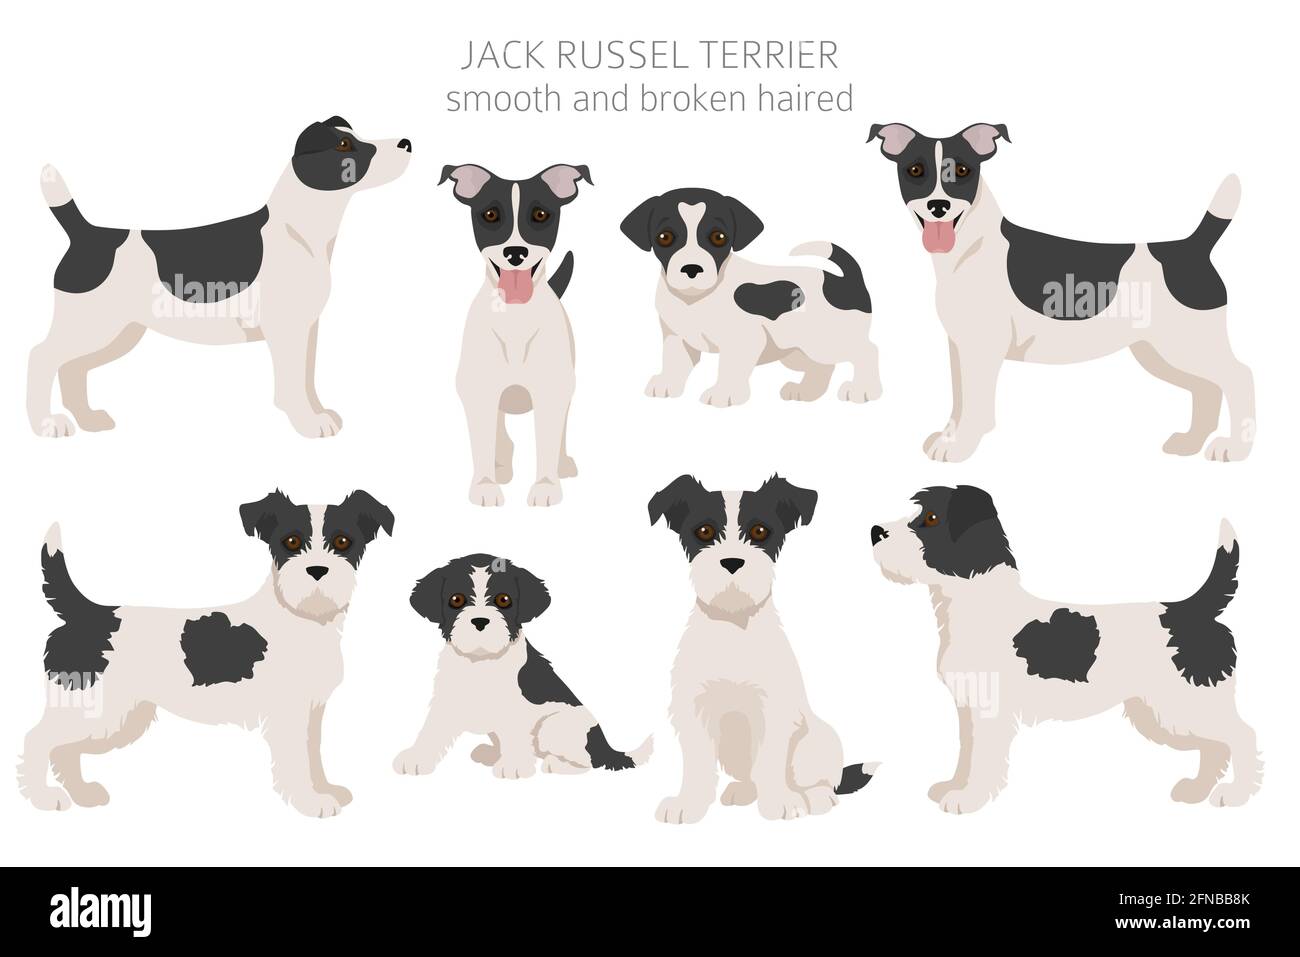 Jack Russel terrier dans différentes poses et couleurs de pelage. Ensemble  pour chiens et chiots adultes. Illustration vectorielle Image Vectorielle  Stock - Alamy